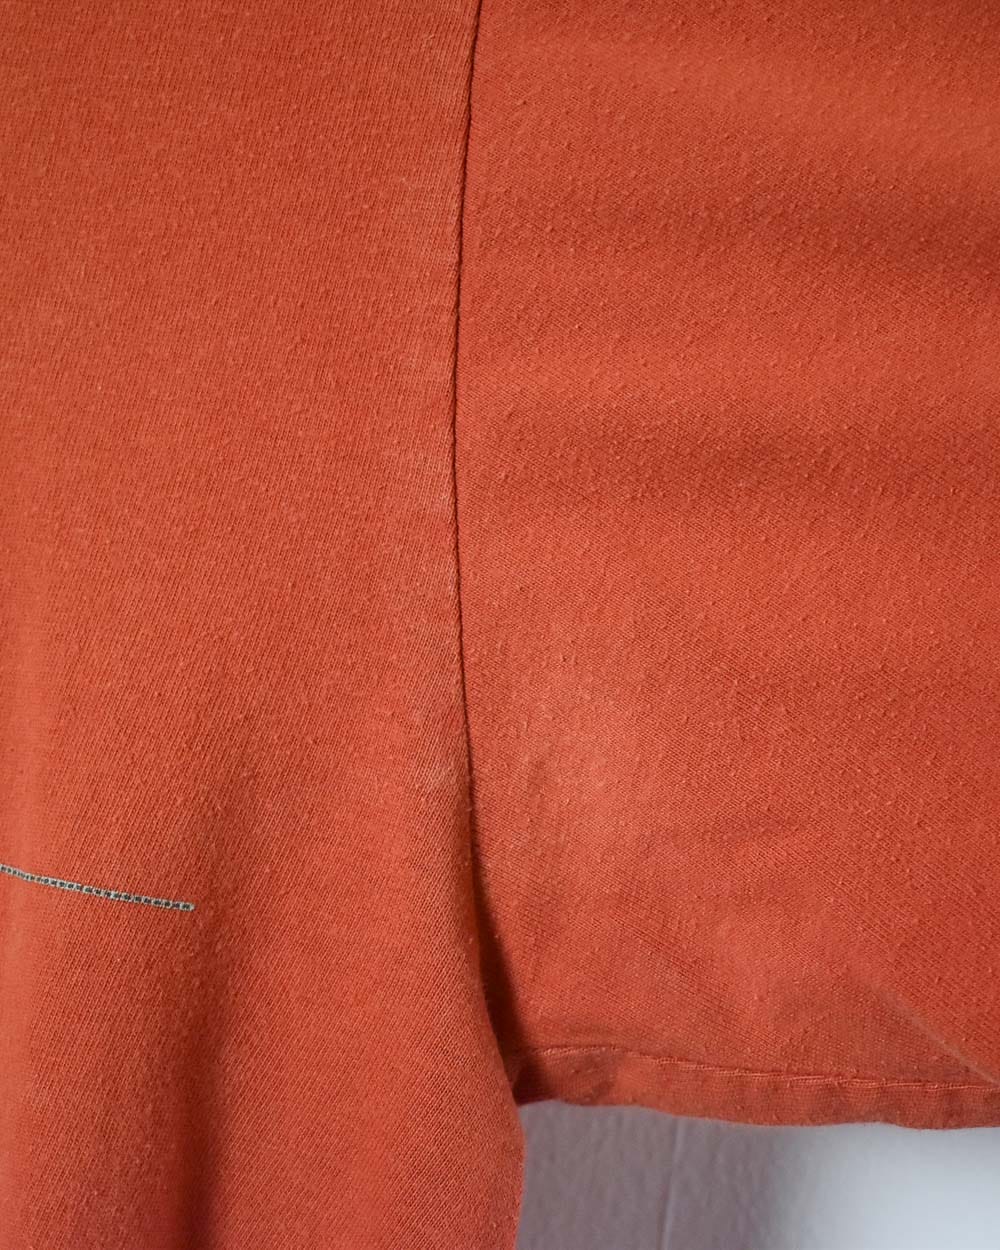 Orange Nike ACG T-Shirt - Medium